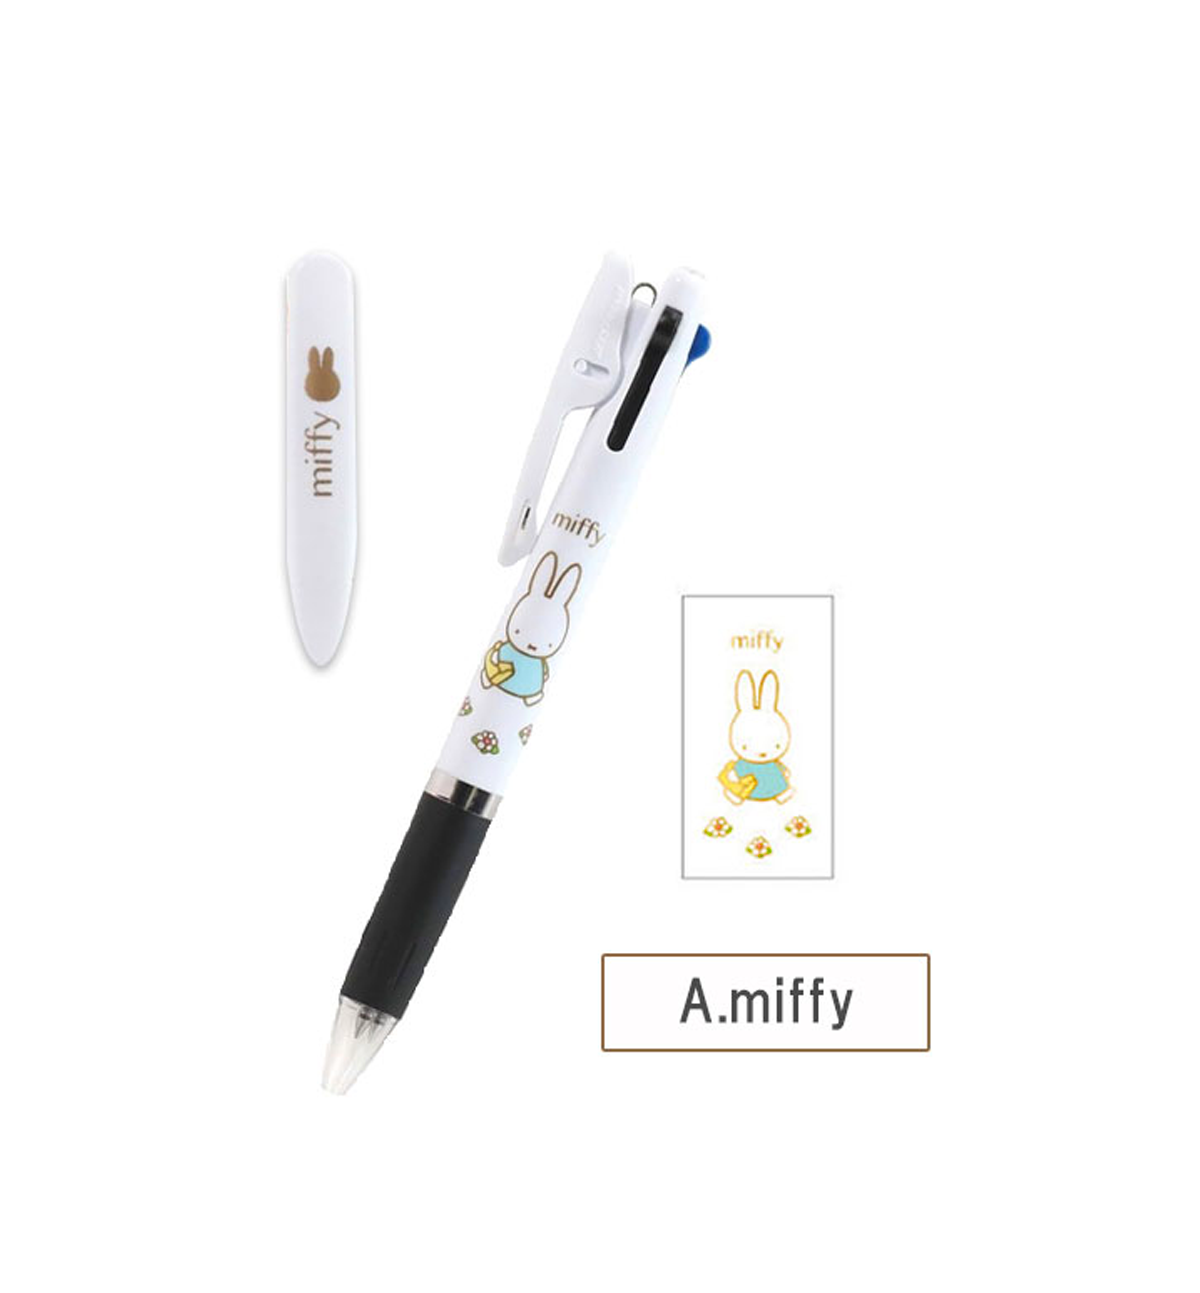 Miffy Jetstream 0.5mm Pen [Miffy Walking]